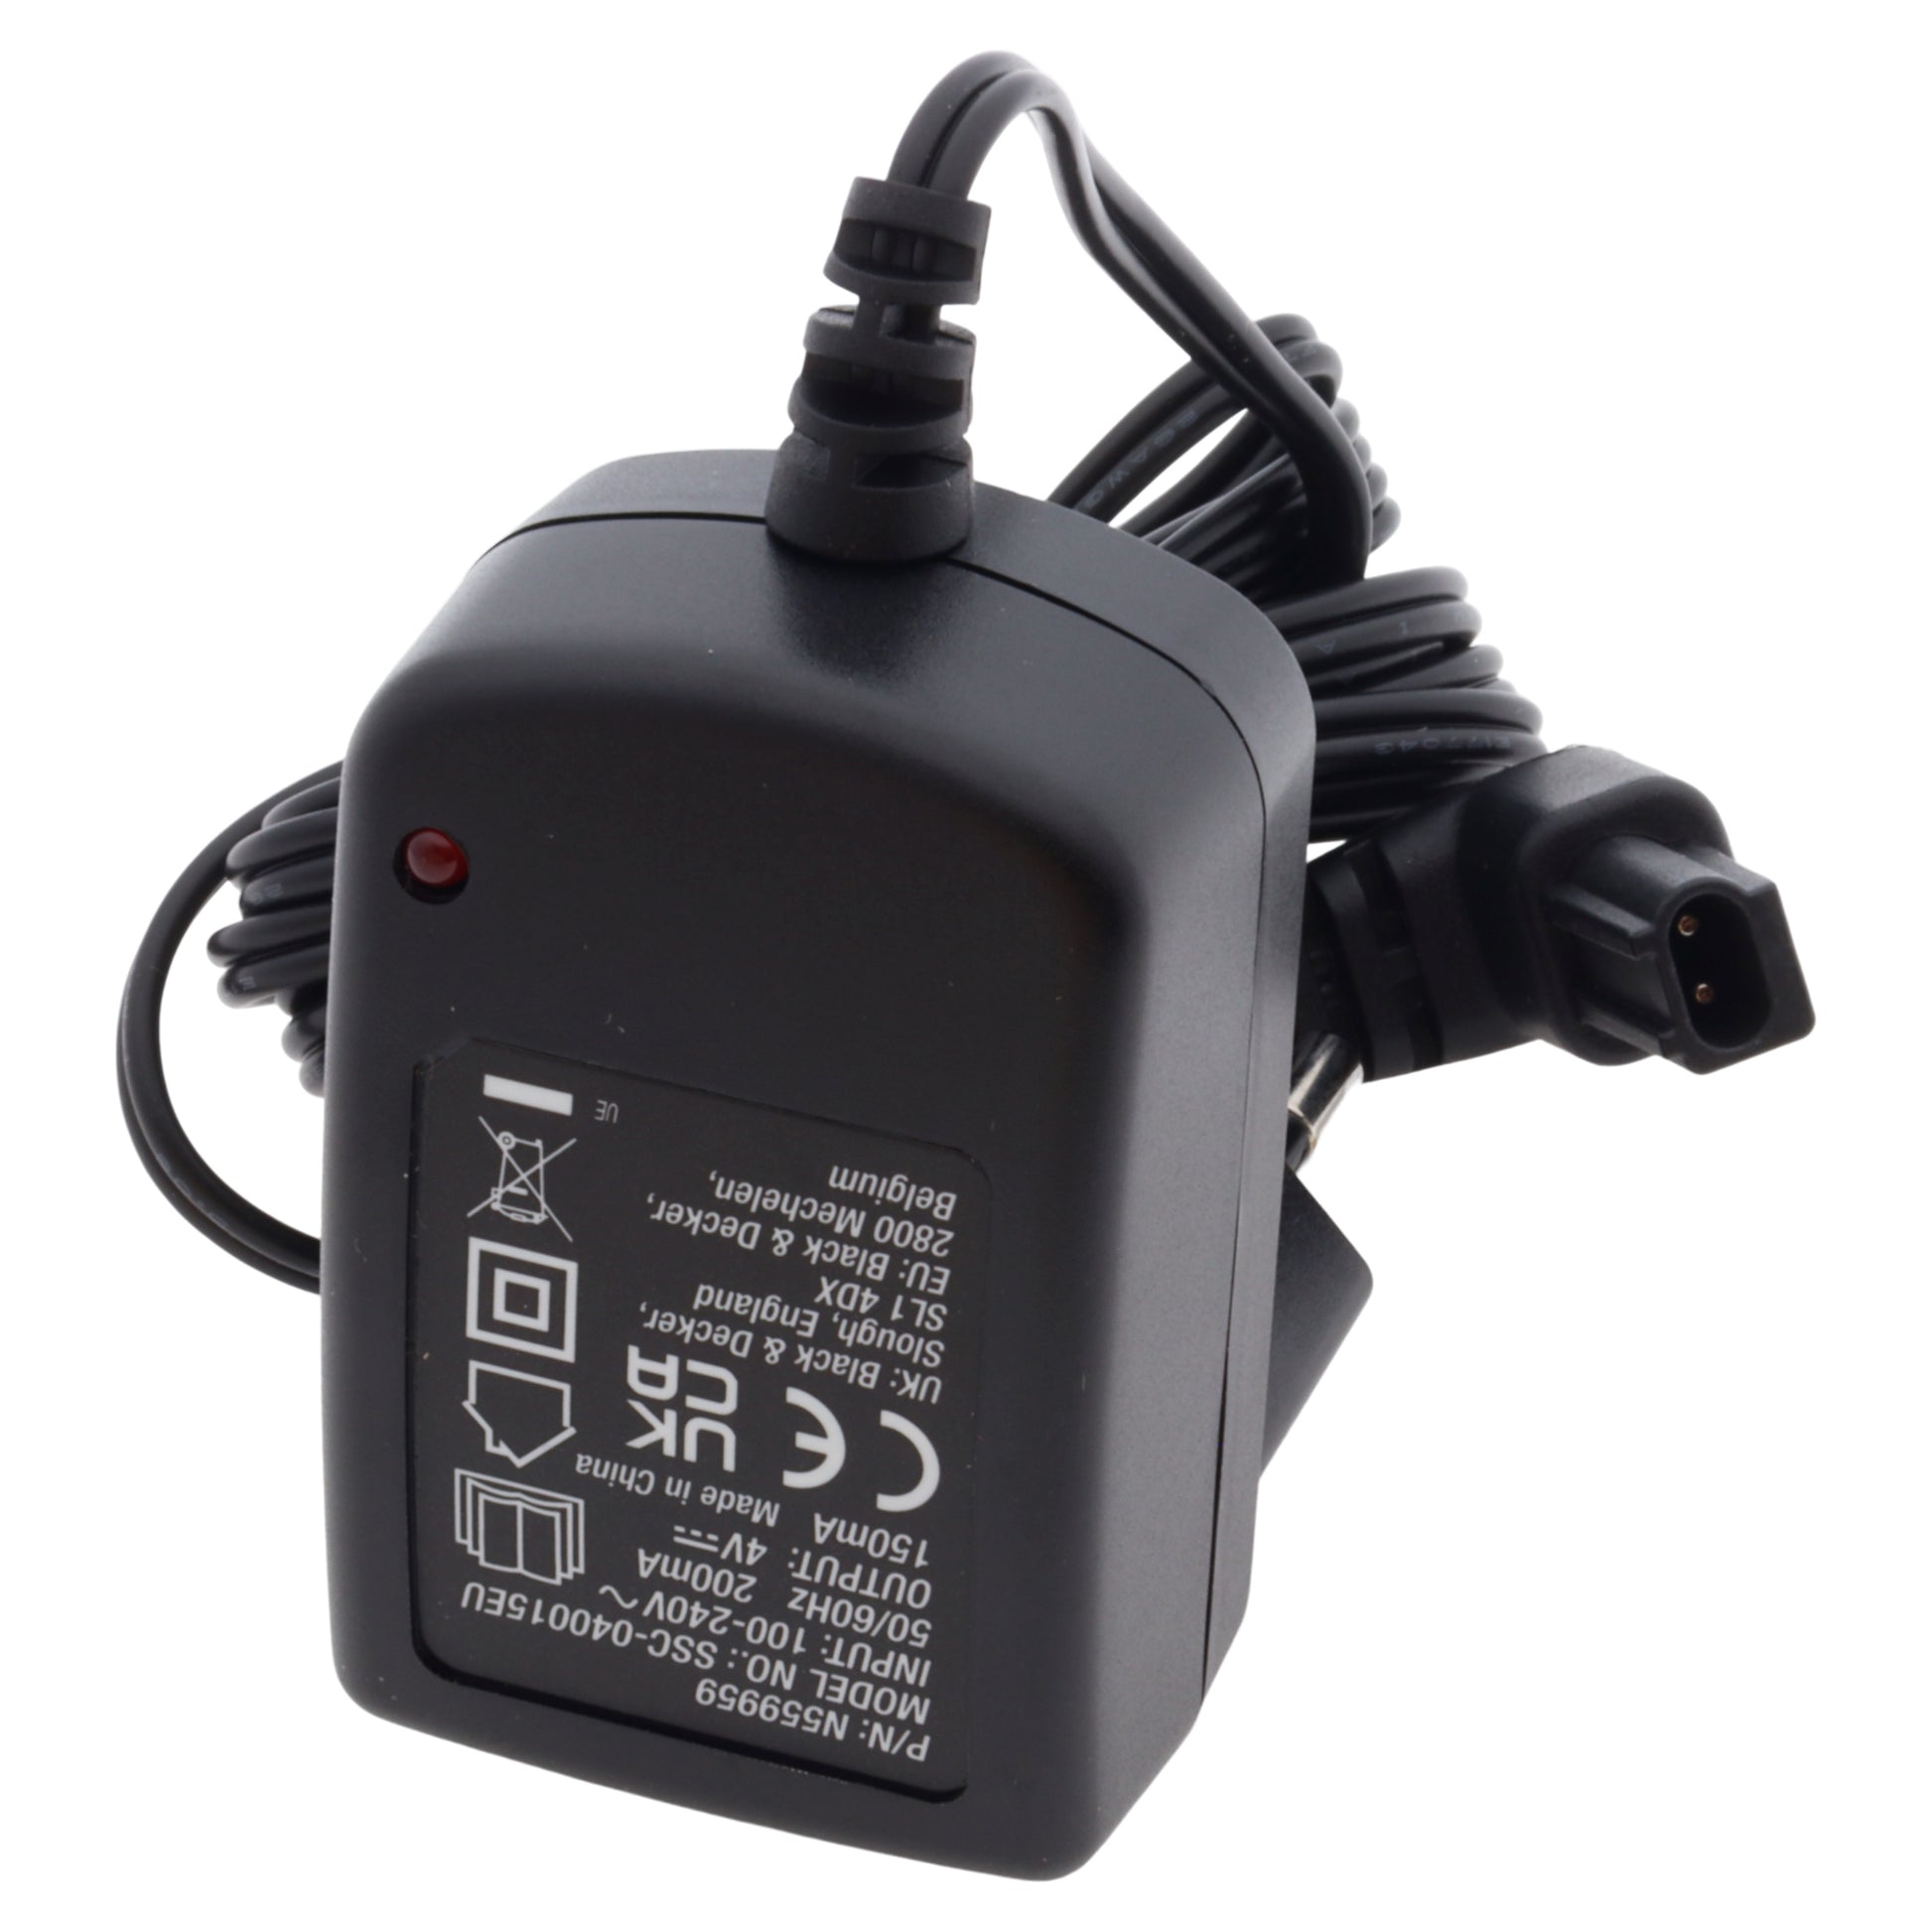 Chargeur de batterie  Basics V-3299USB-EU Noir